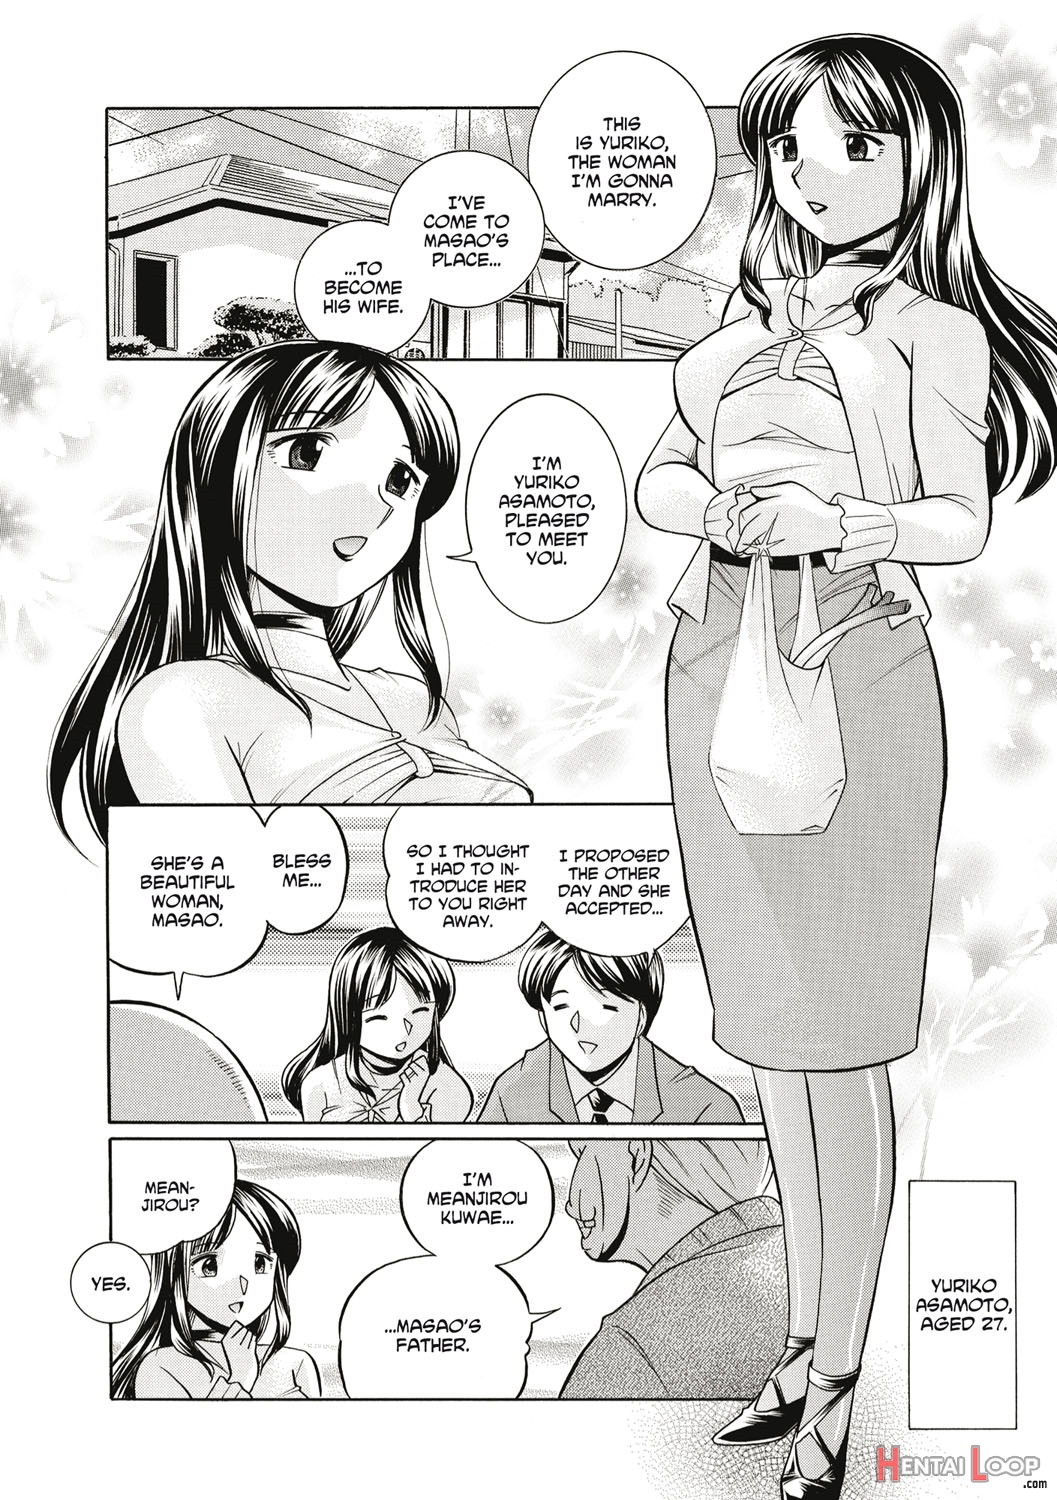 Gichichi page 5